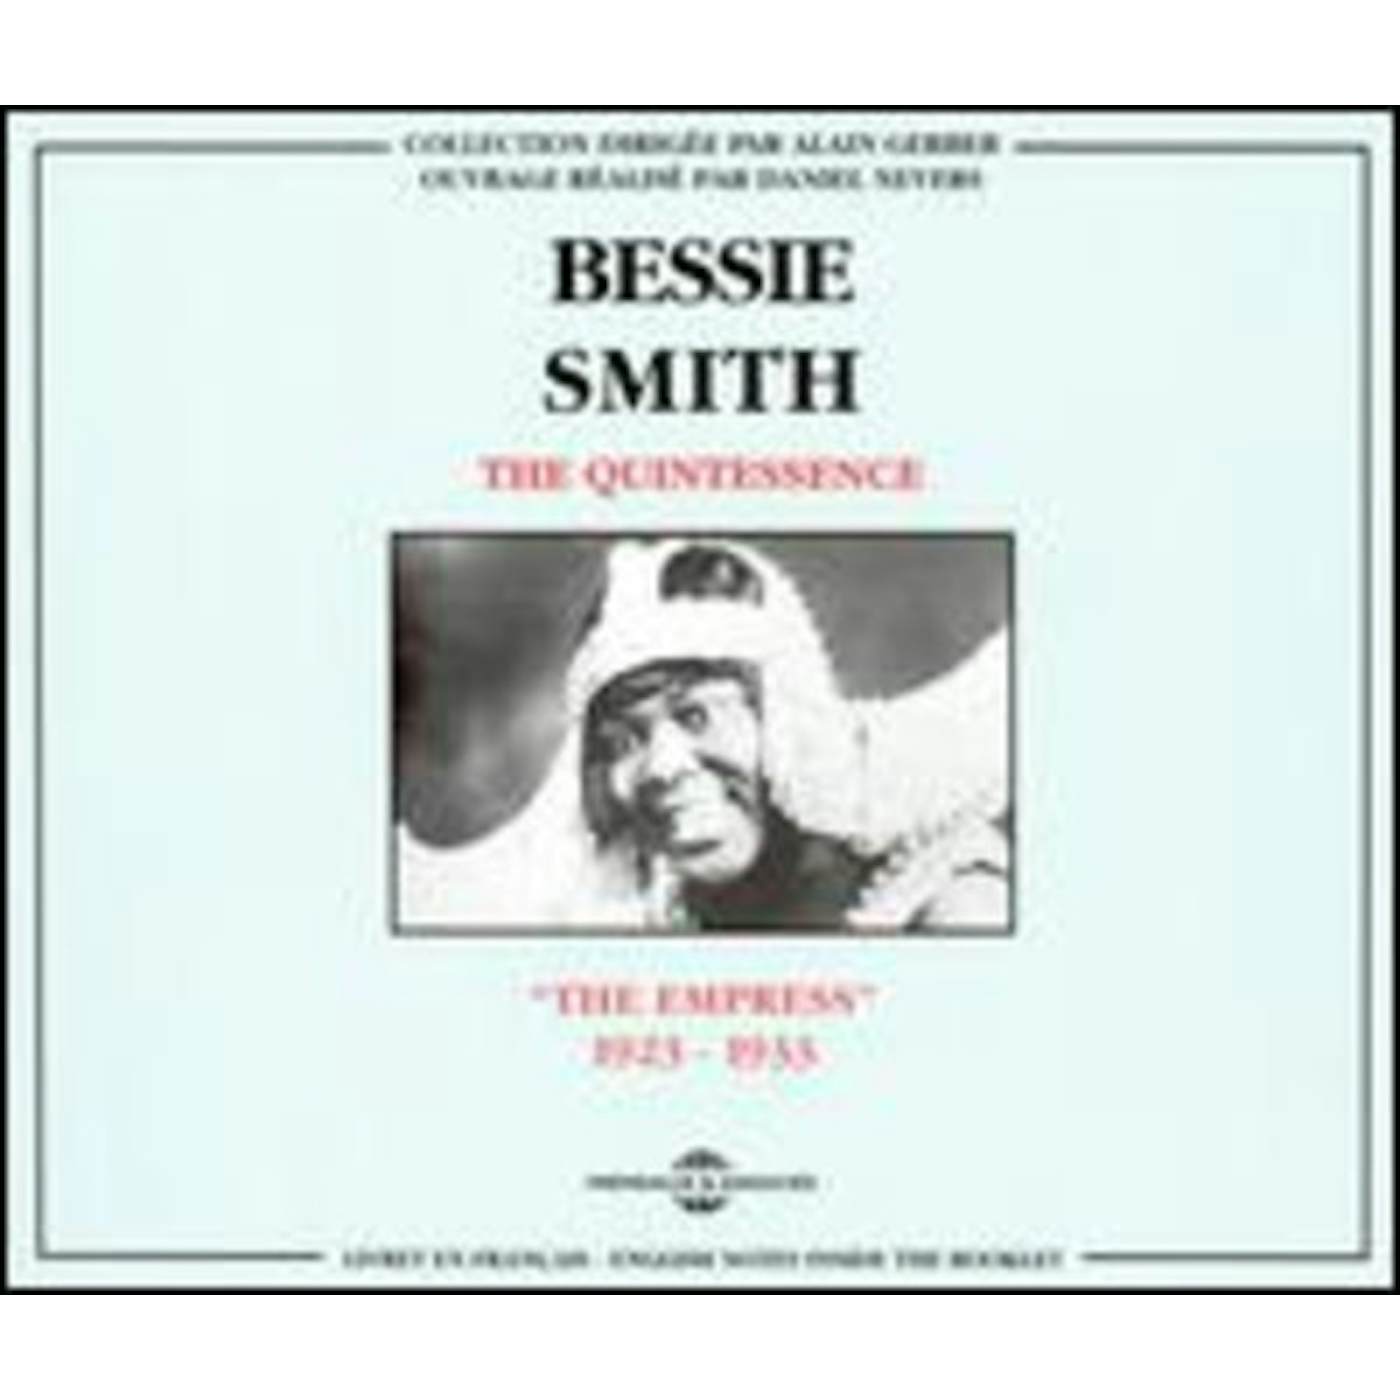 Bessie Smith EMPRESS 1923-1933 CD